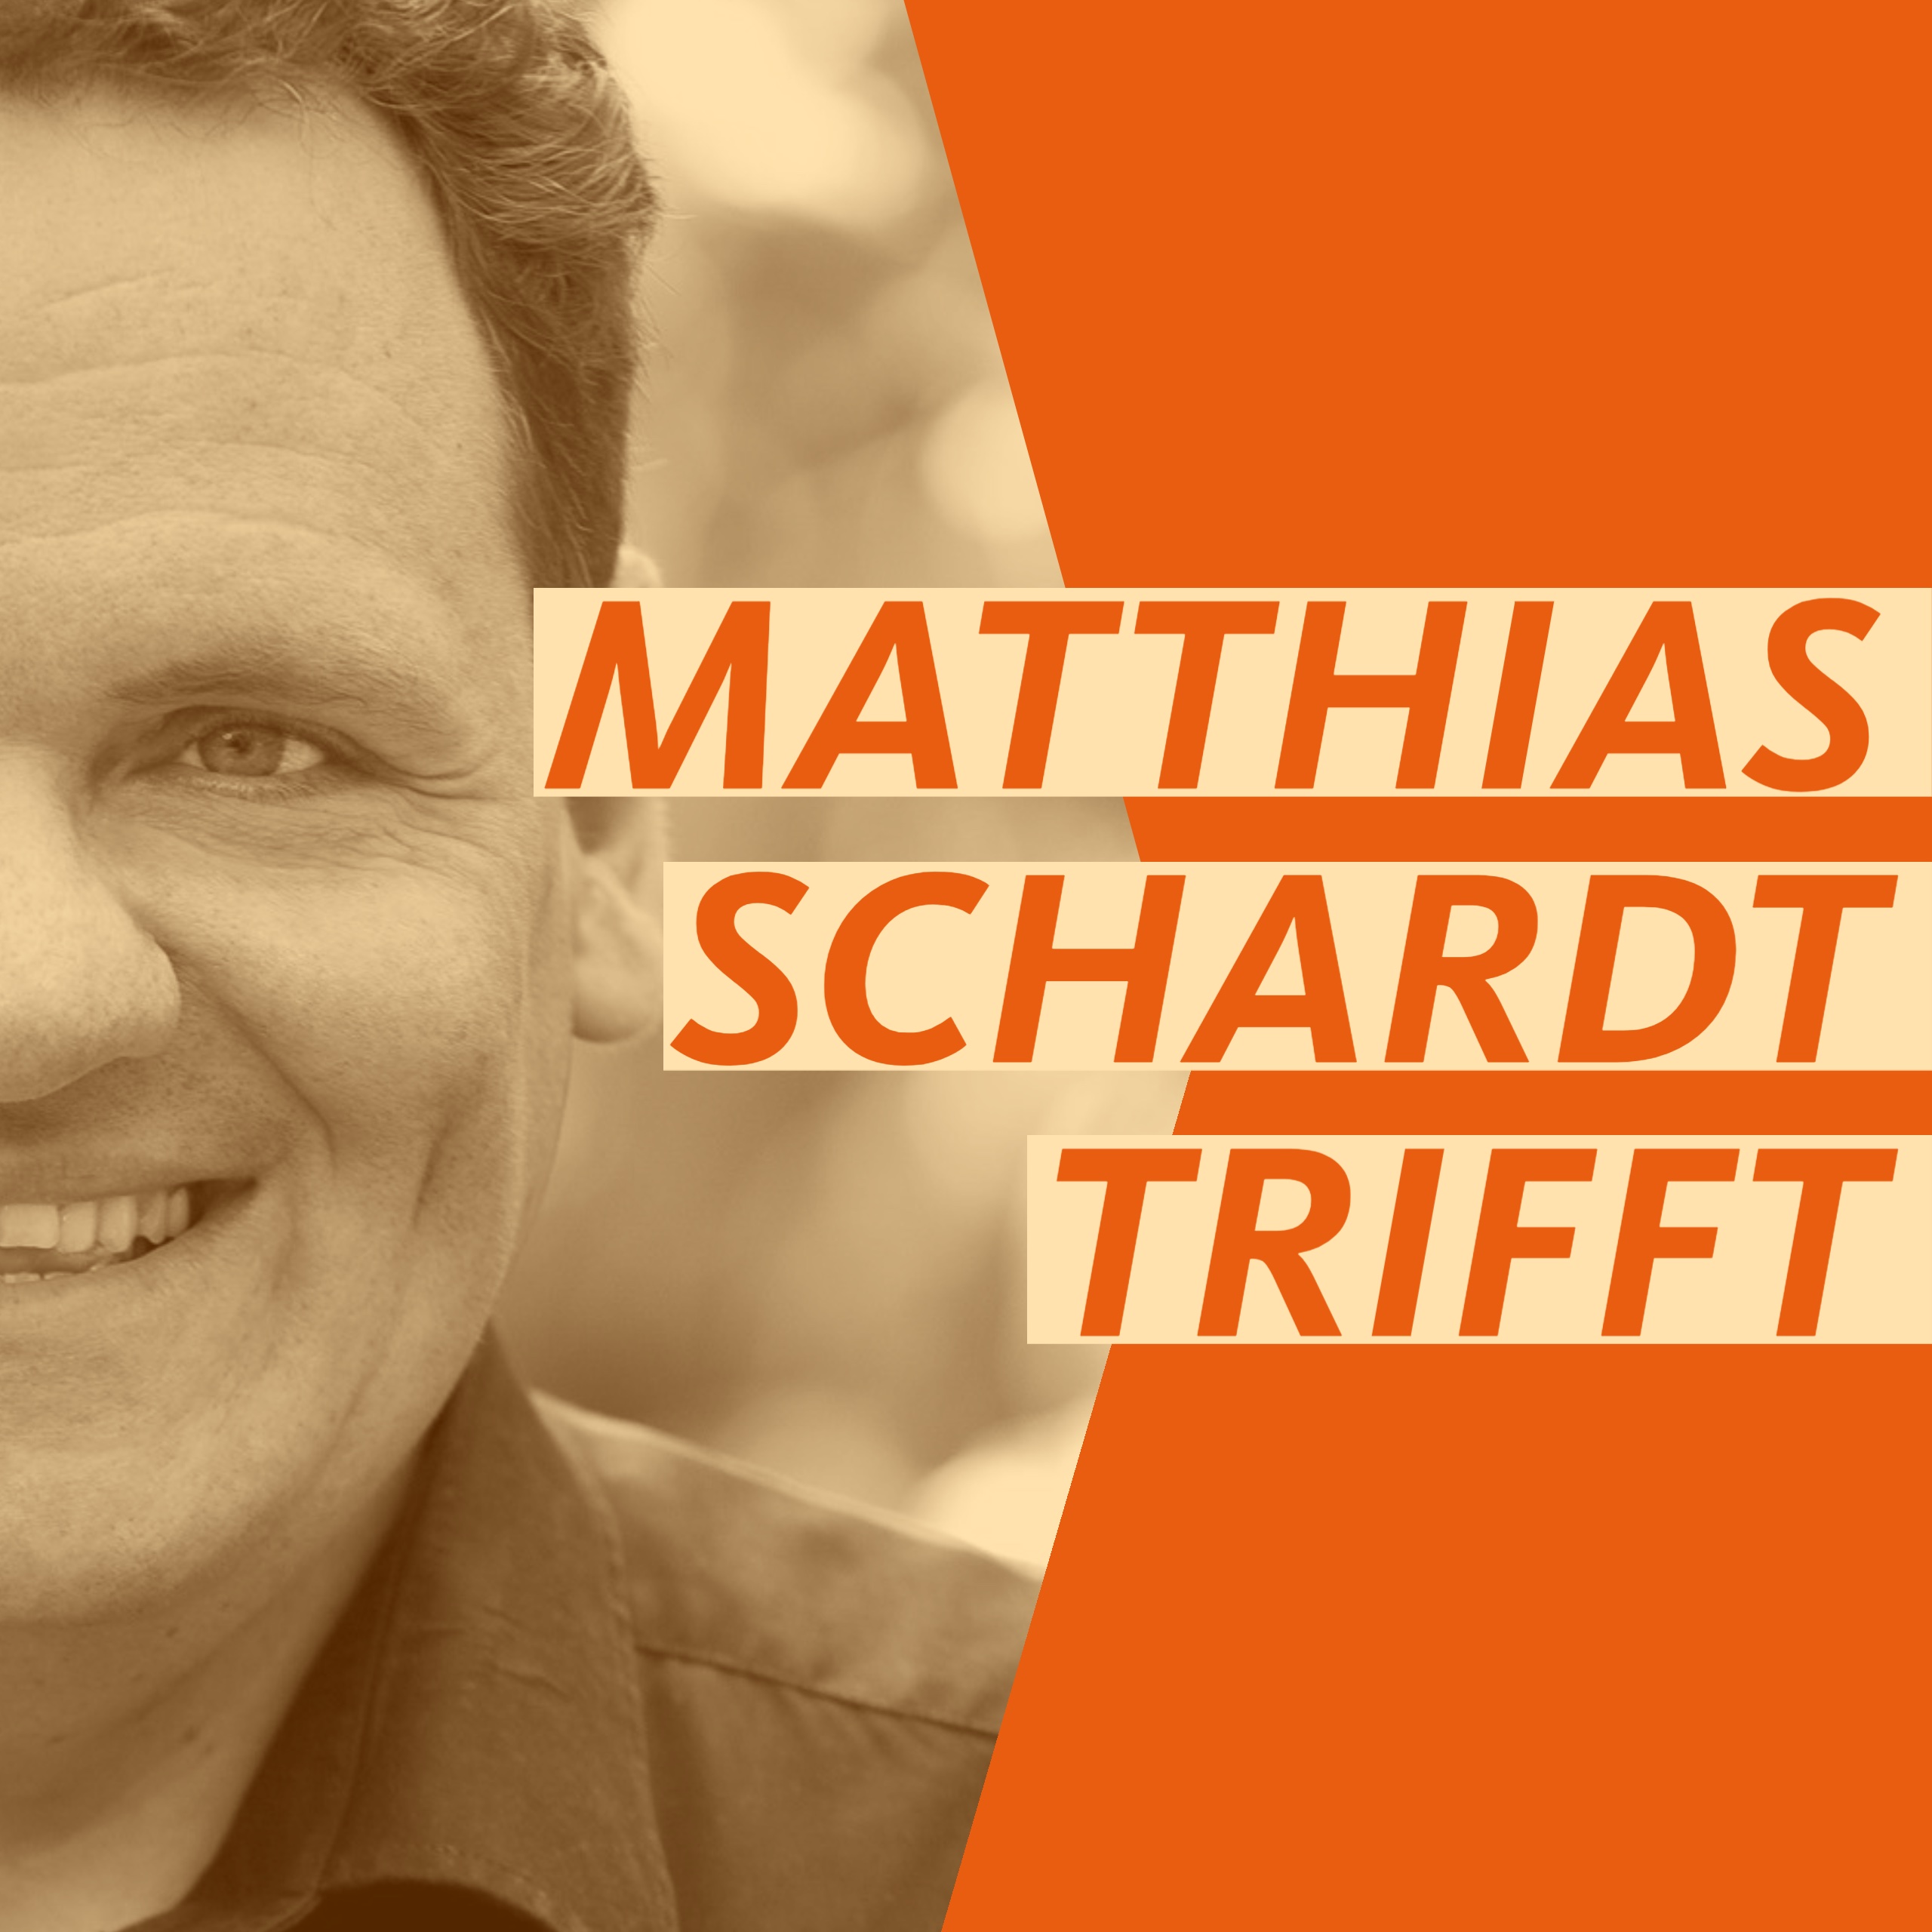 Matthias Schardt trifft